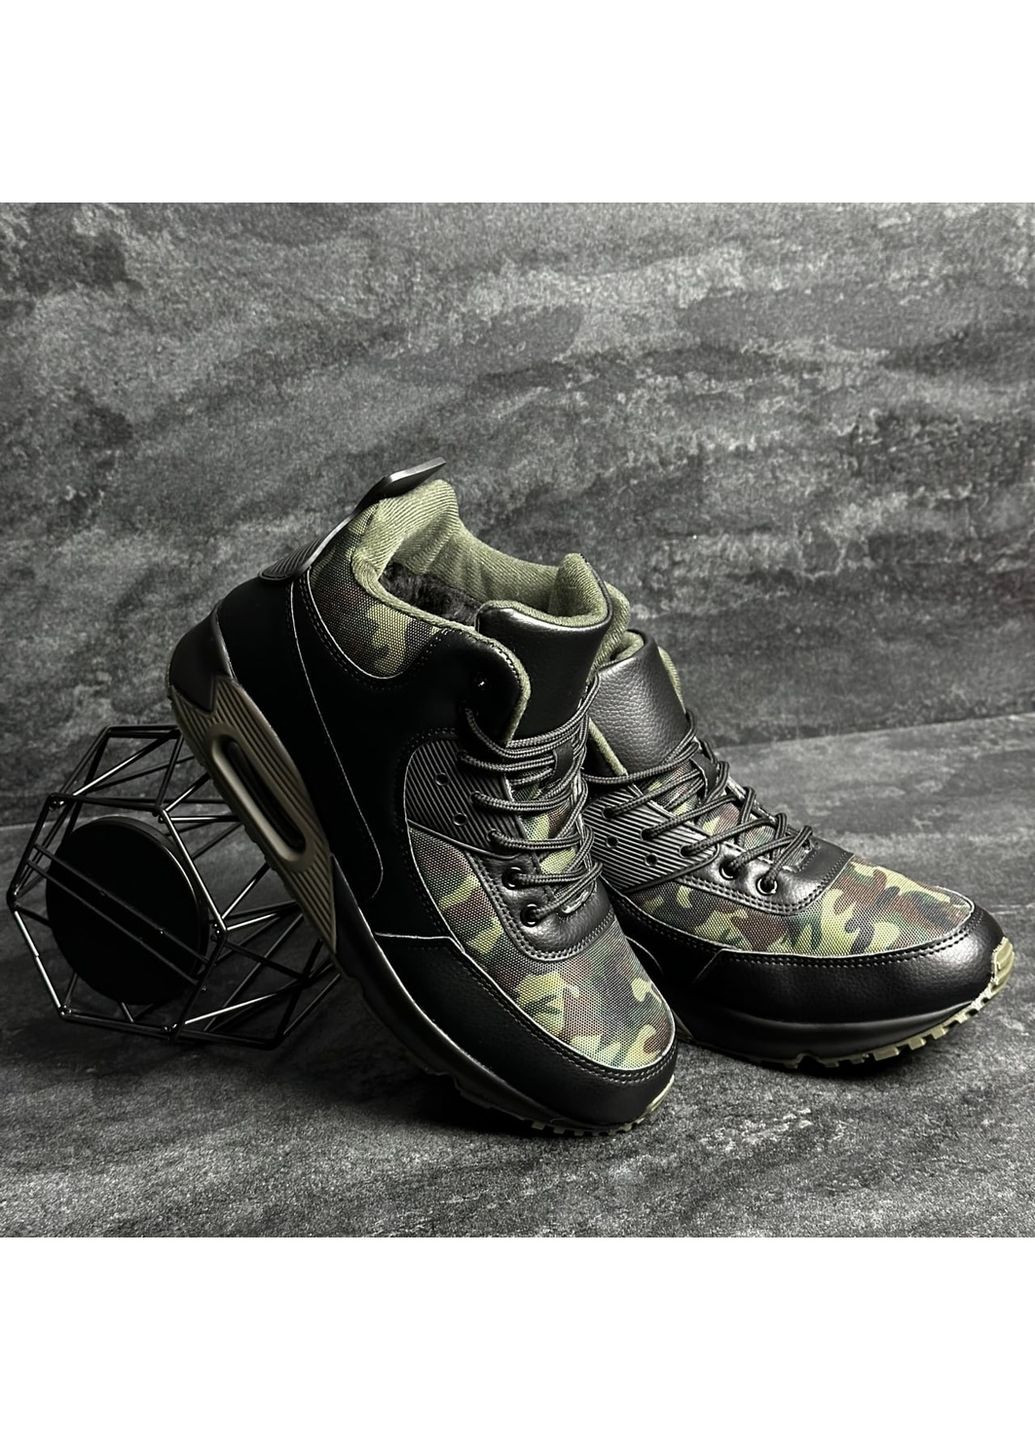 Хаки спортивные, повседневные осенние ботинки зимние термо-влаго защита Stilli